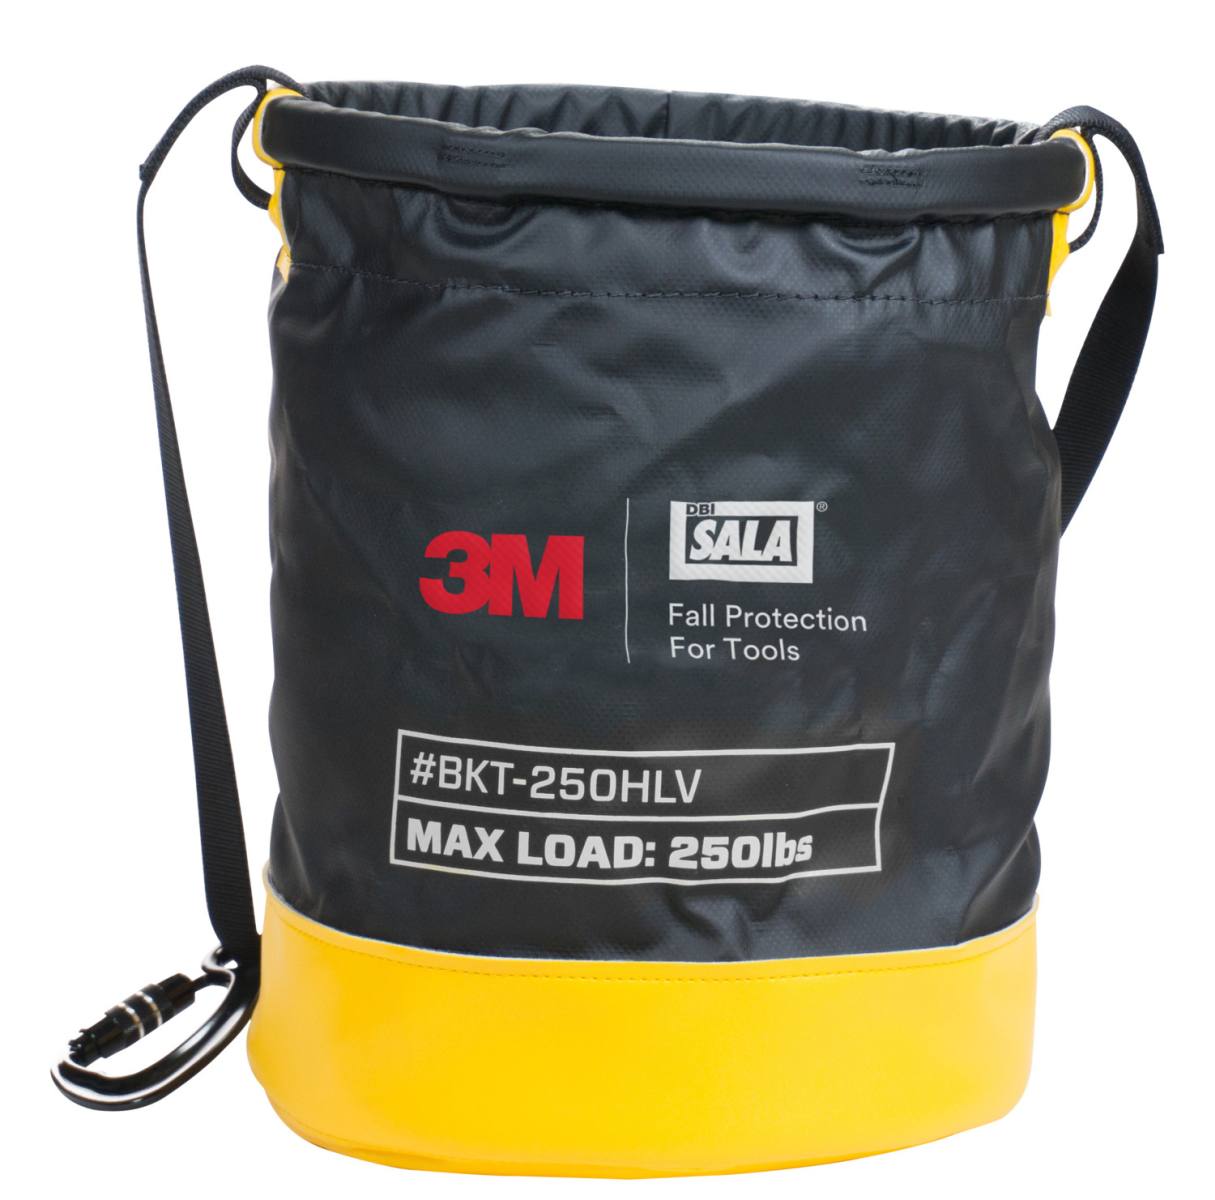 3M DBI-SALA sac de transport SAFETY BUCKET, taille : 38 x 32 cm, vinyle imperméable, cordon de serrage, sangle de transport, divers œillets métalliques, charge max. 113,4 kg, H38 x D32 cm